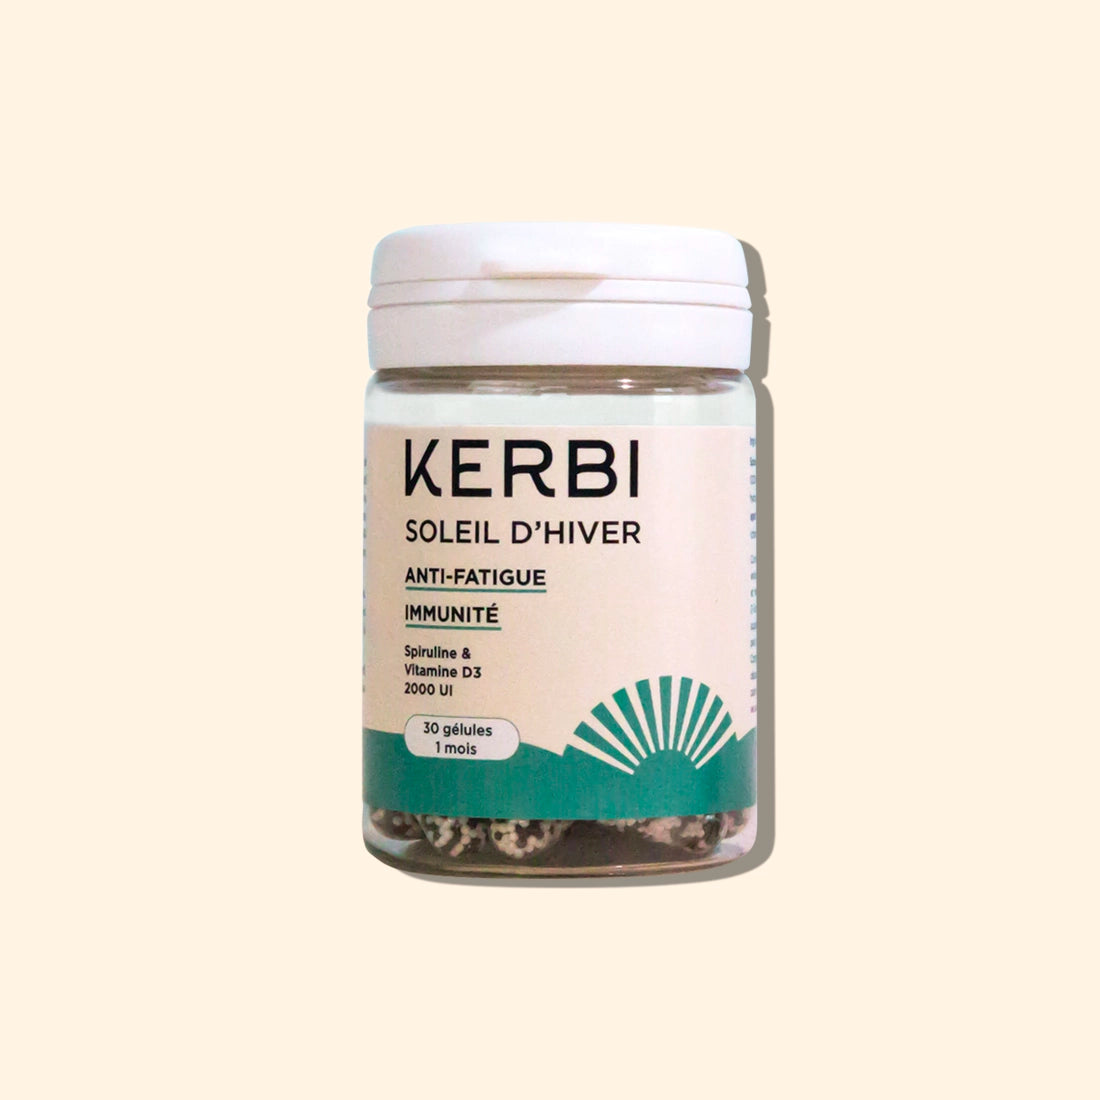 Compléments alimentaires Kerbi - Vitamine D3, renforce l'immunité et la santé osseuse, capsules naturelles.